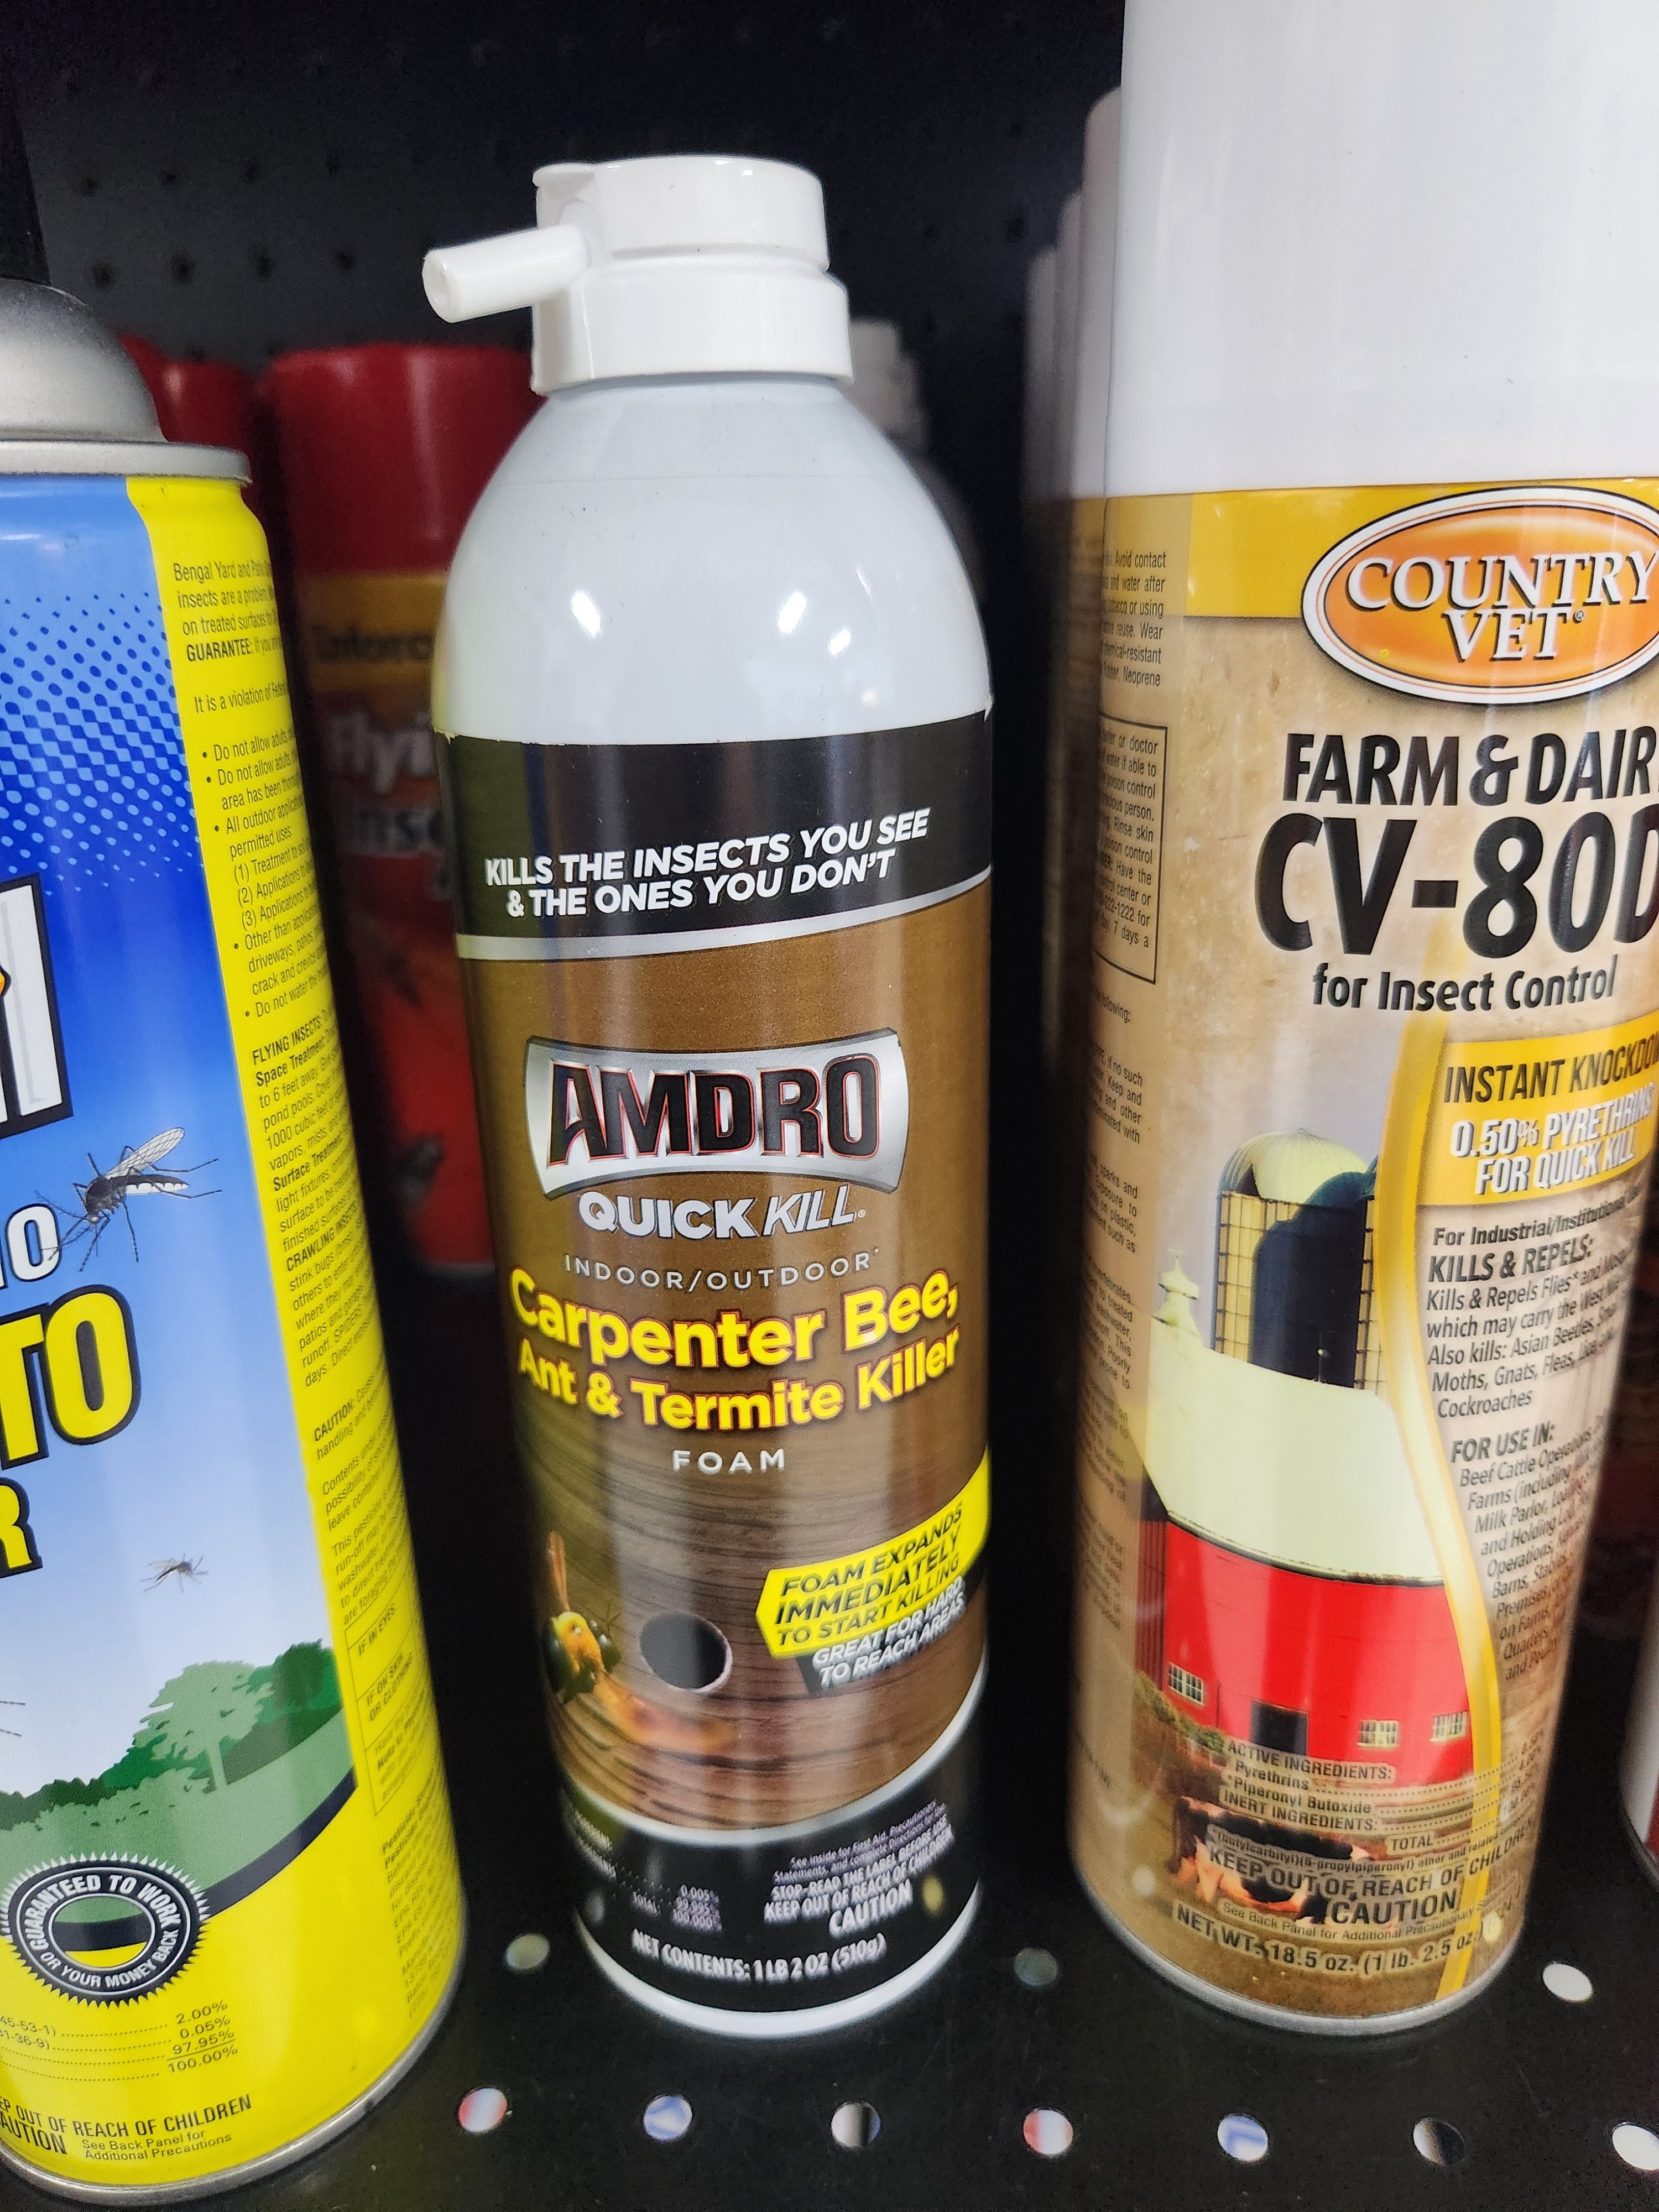 AMDRO 18-oz Quick kill Carpenter Bee, Ant and Termite Killer Foam